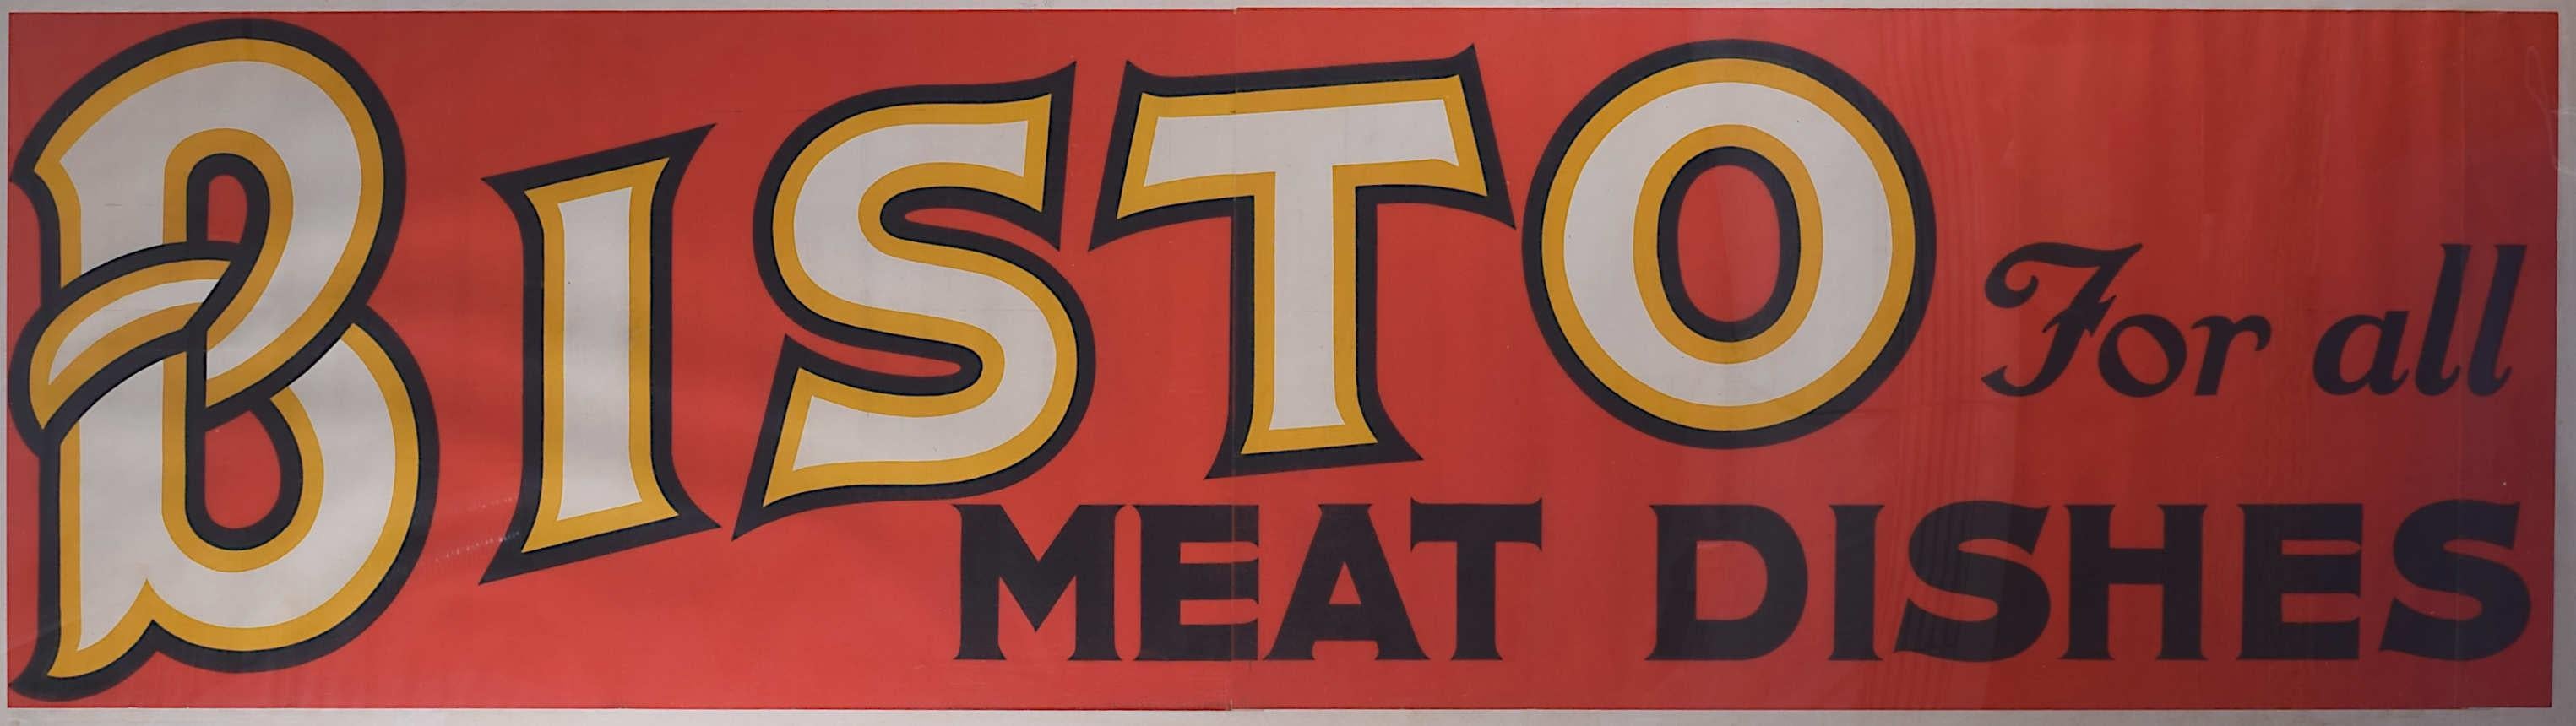 Original-Vintage-Plakat „Bisto for all Meat Dishes“, um 1950 – Print von Unknown